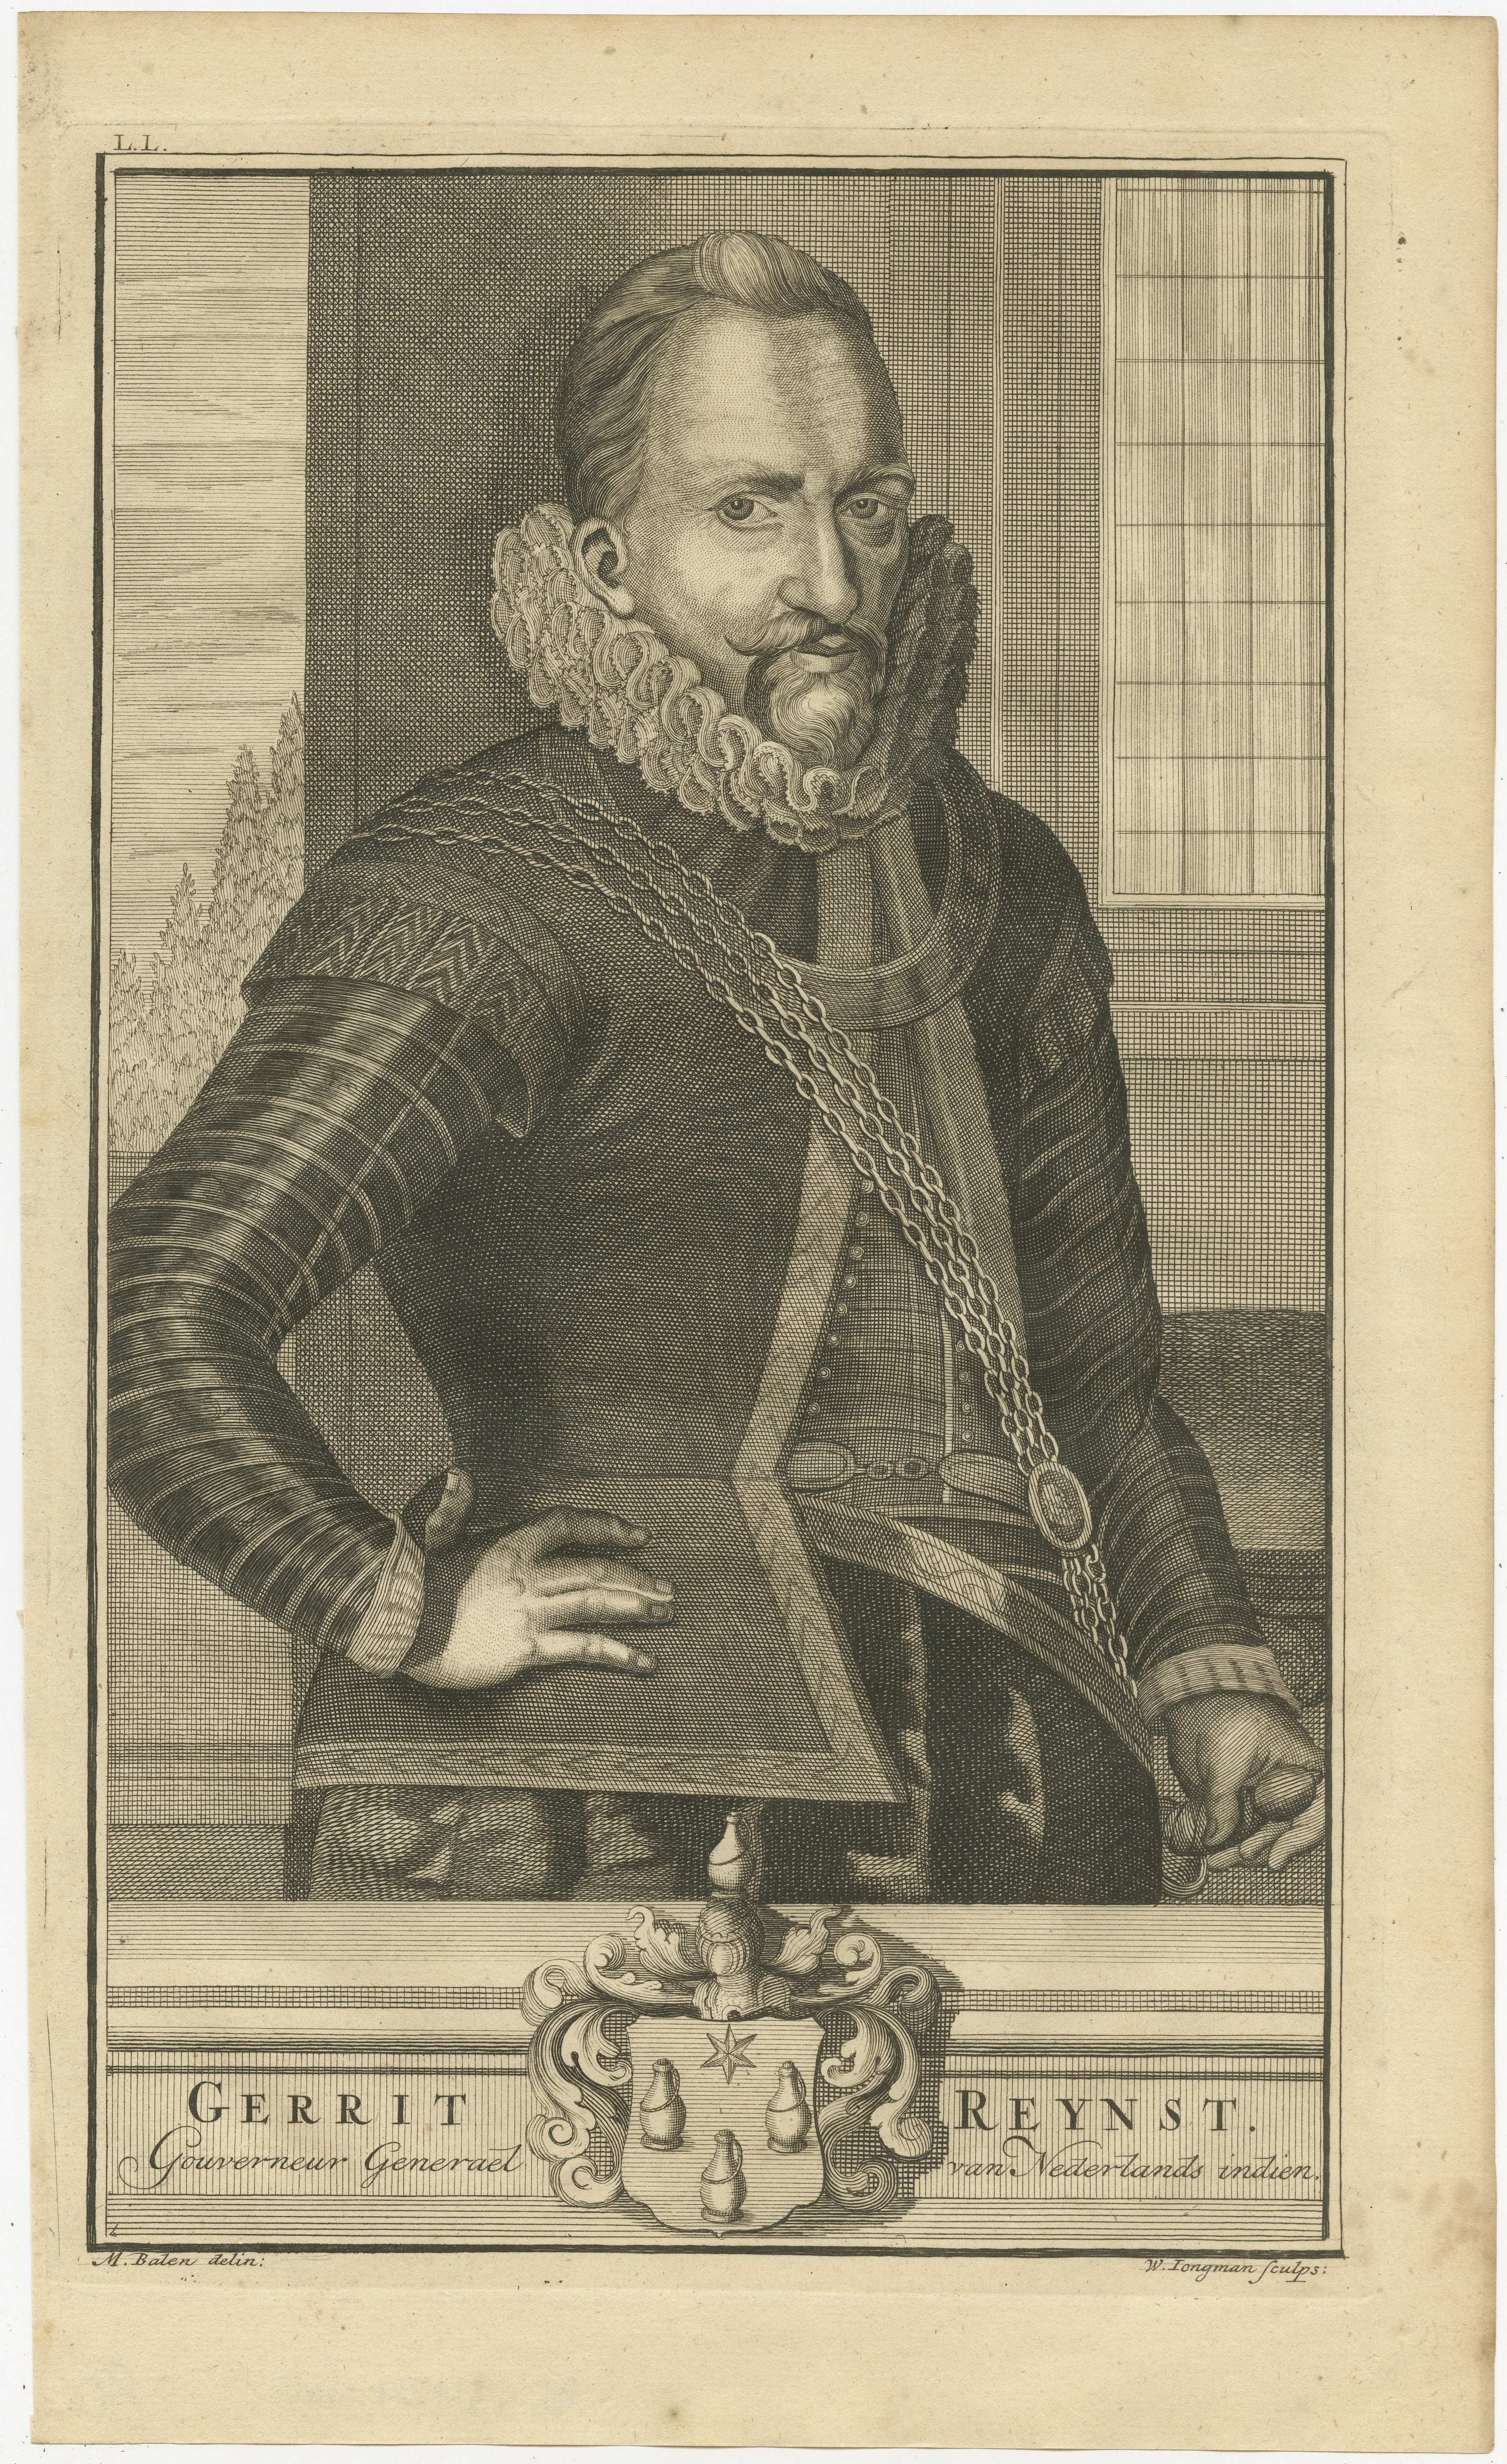 Gravure sur cuivre de Gerrit Reynst, gouverneur général des Indes néerlandaises. La gravure date de 1724 et a été publiée par Valentijn. Elle présente un portrait très détaillé de Reynst, caractérisé par un travail au trait complexe, typique des